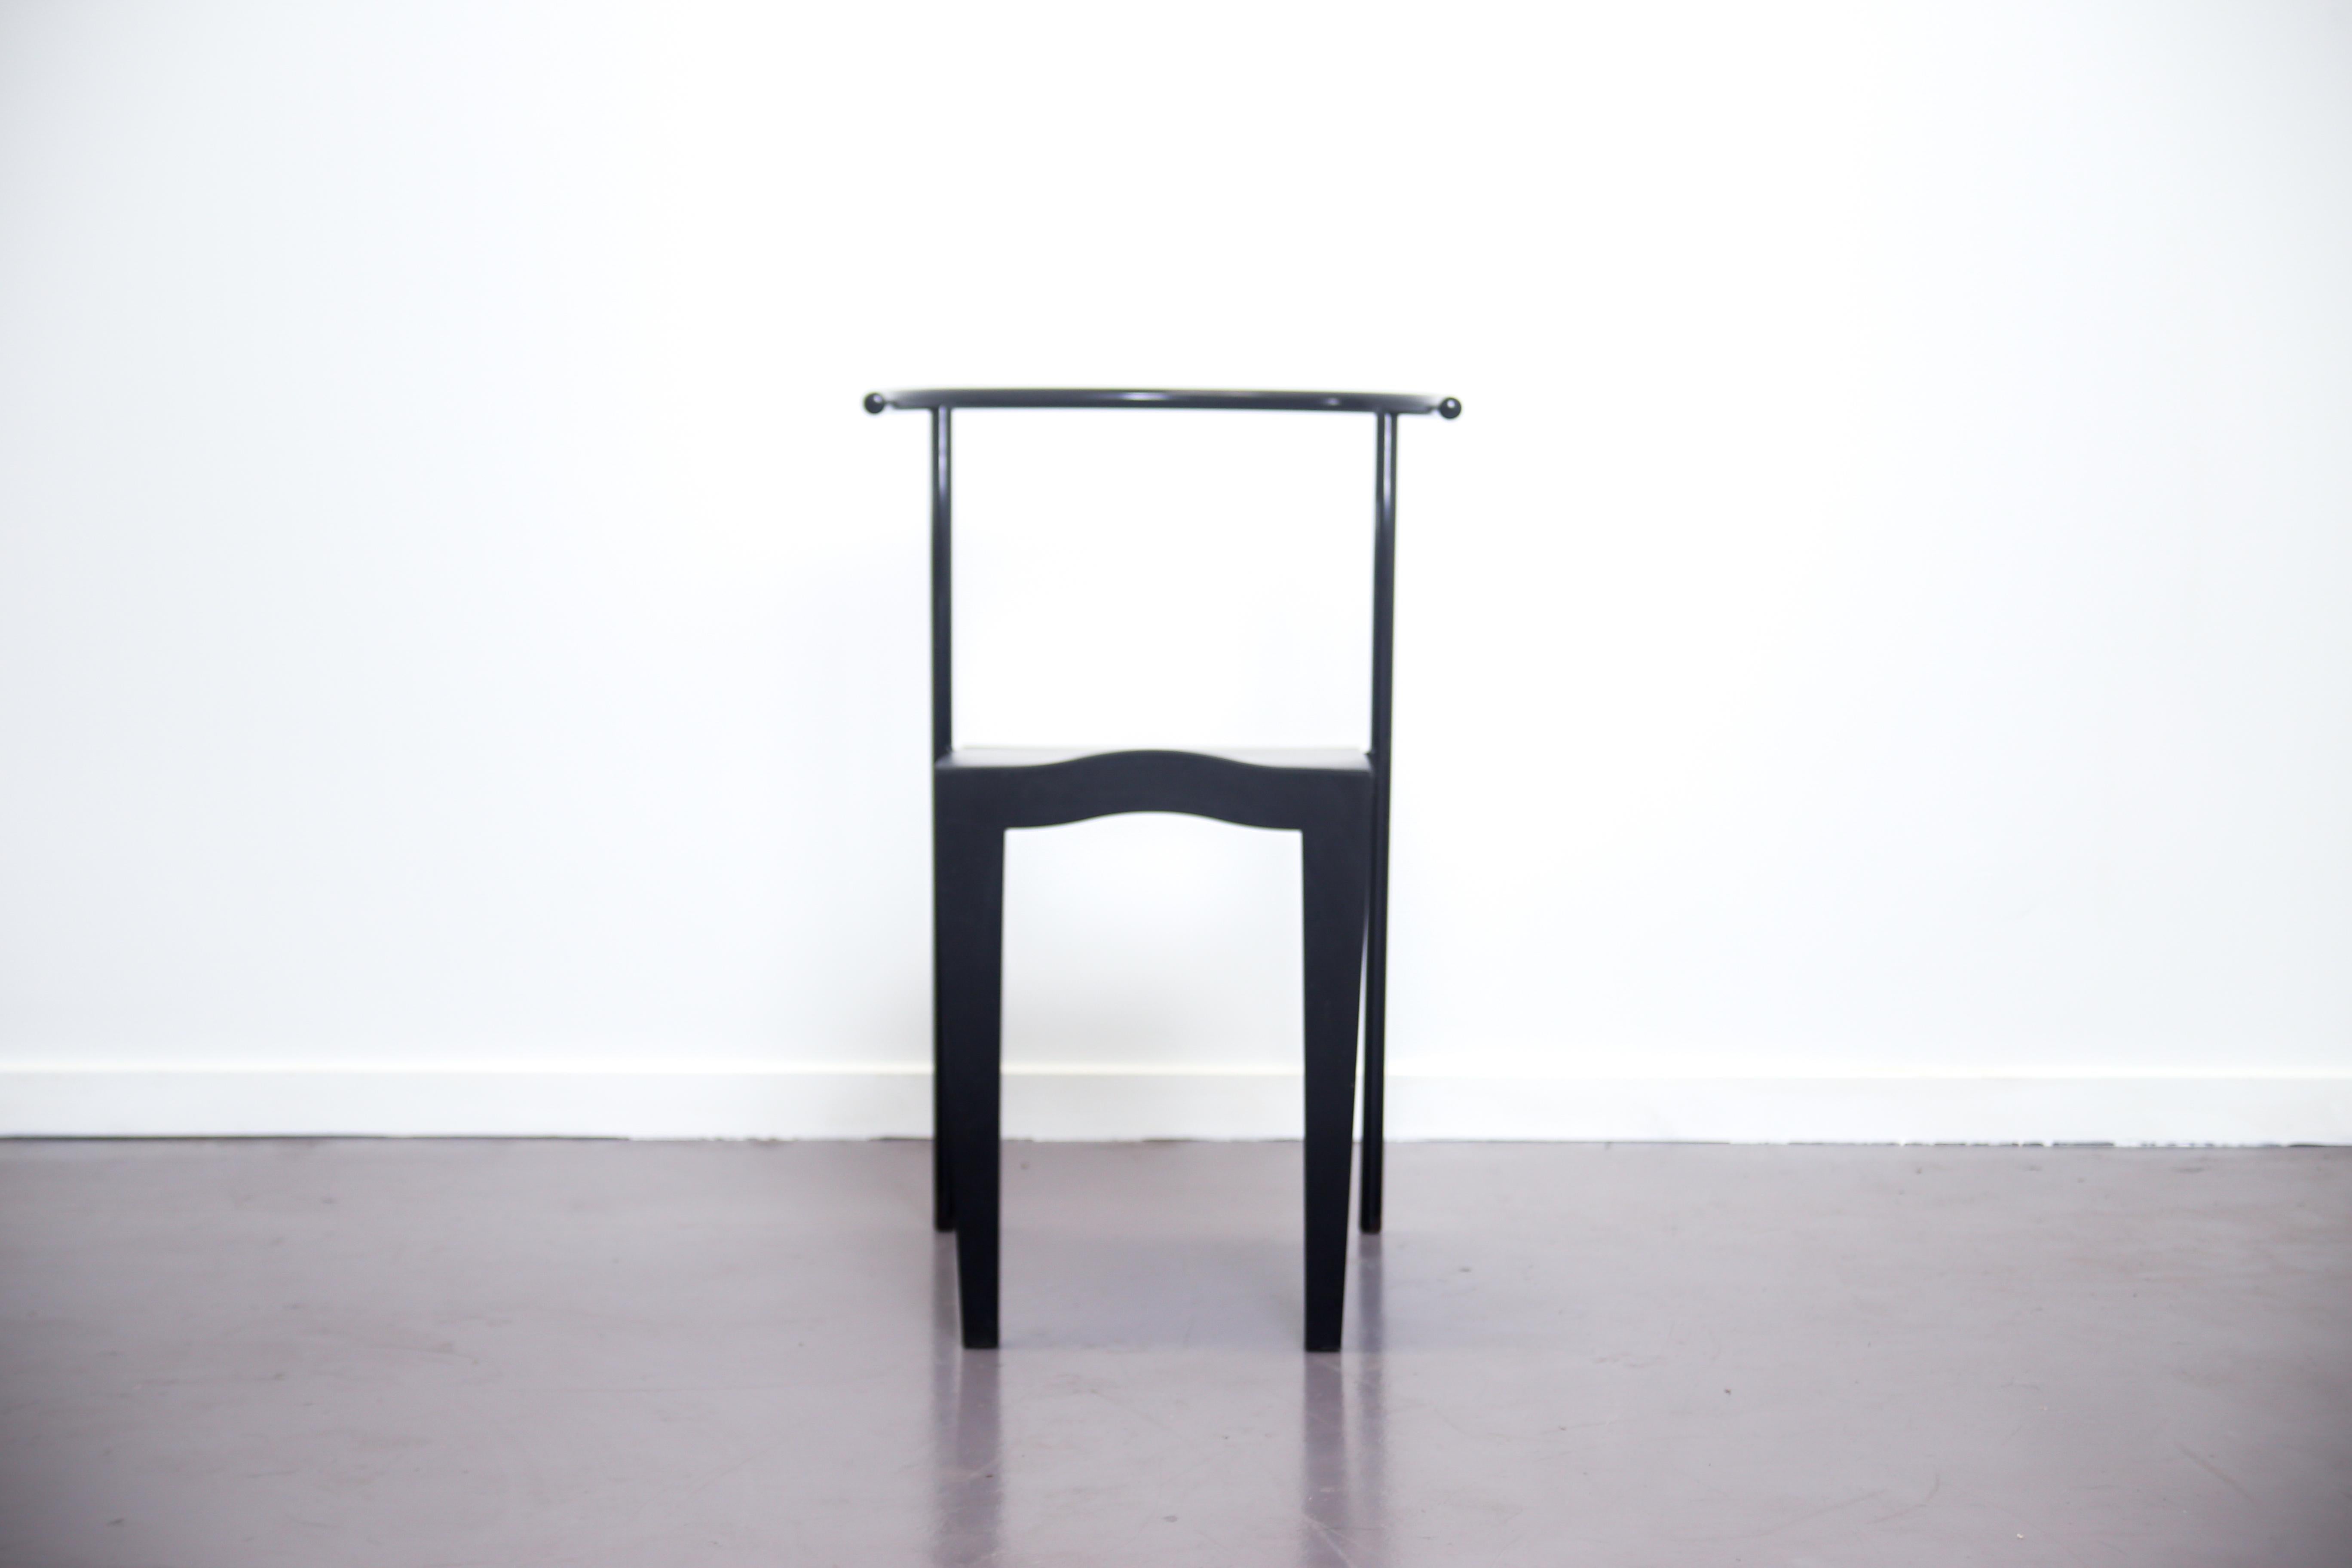 Cette chaise Dr. Glob a été conçue par Philippe Starck pour Kartell en 1988. La chaise Dr. Glob est née de l'idée de combiner différents matériaux pour obtenir une plus grande rigidité structurelle et une approche innovante du design:: elle joue